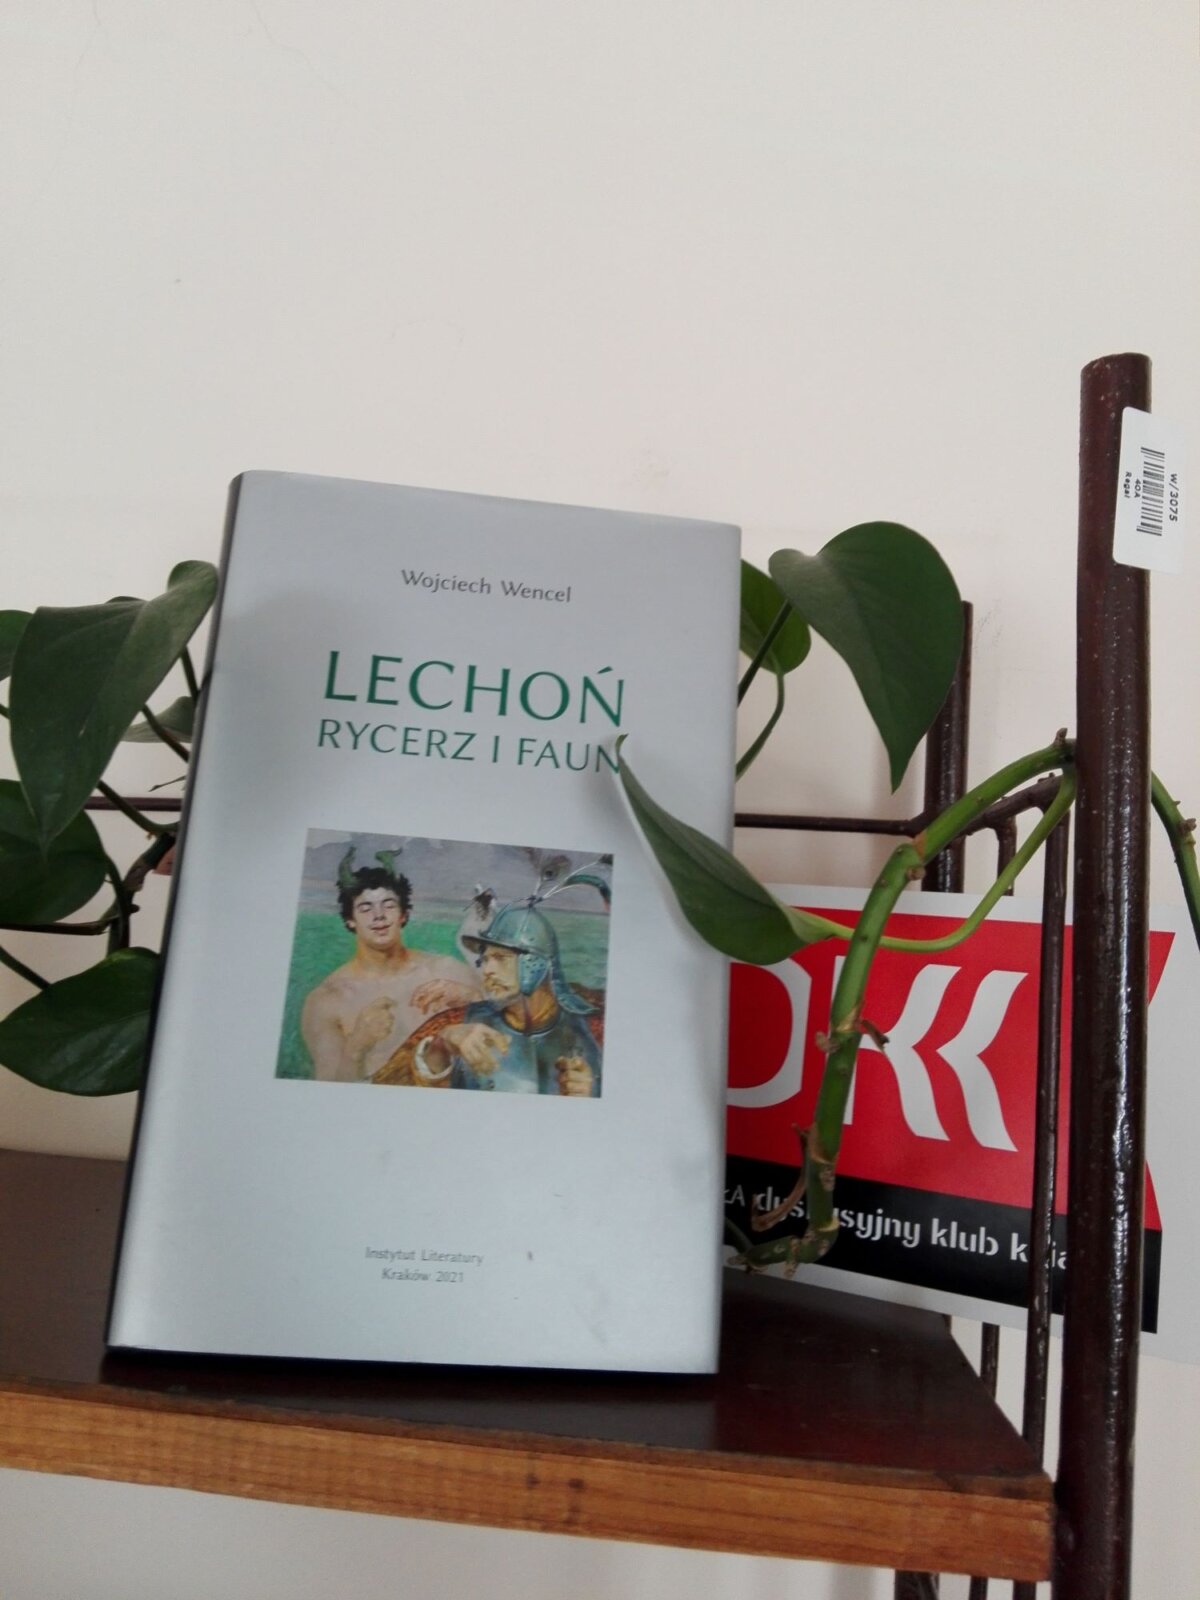 książka Wojciecha Wencla „Lechoń. Rycerz i faun” na regale, w tle roślina.